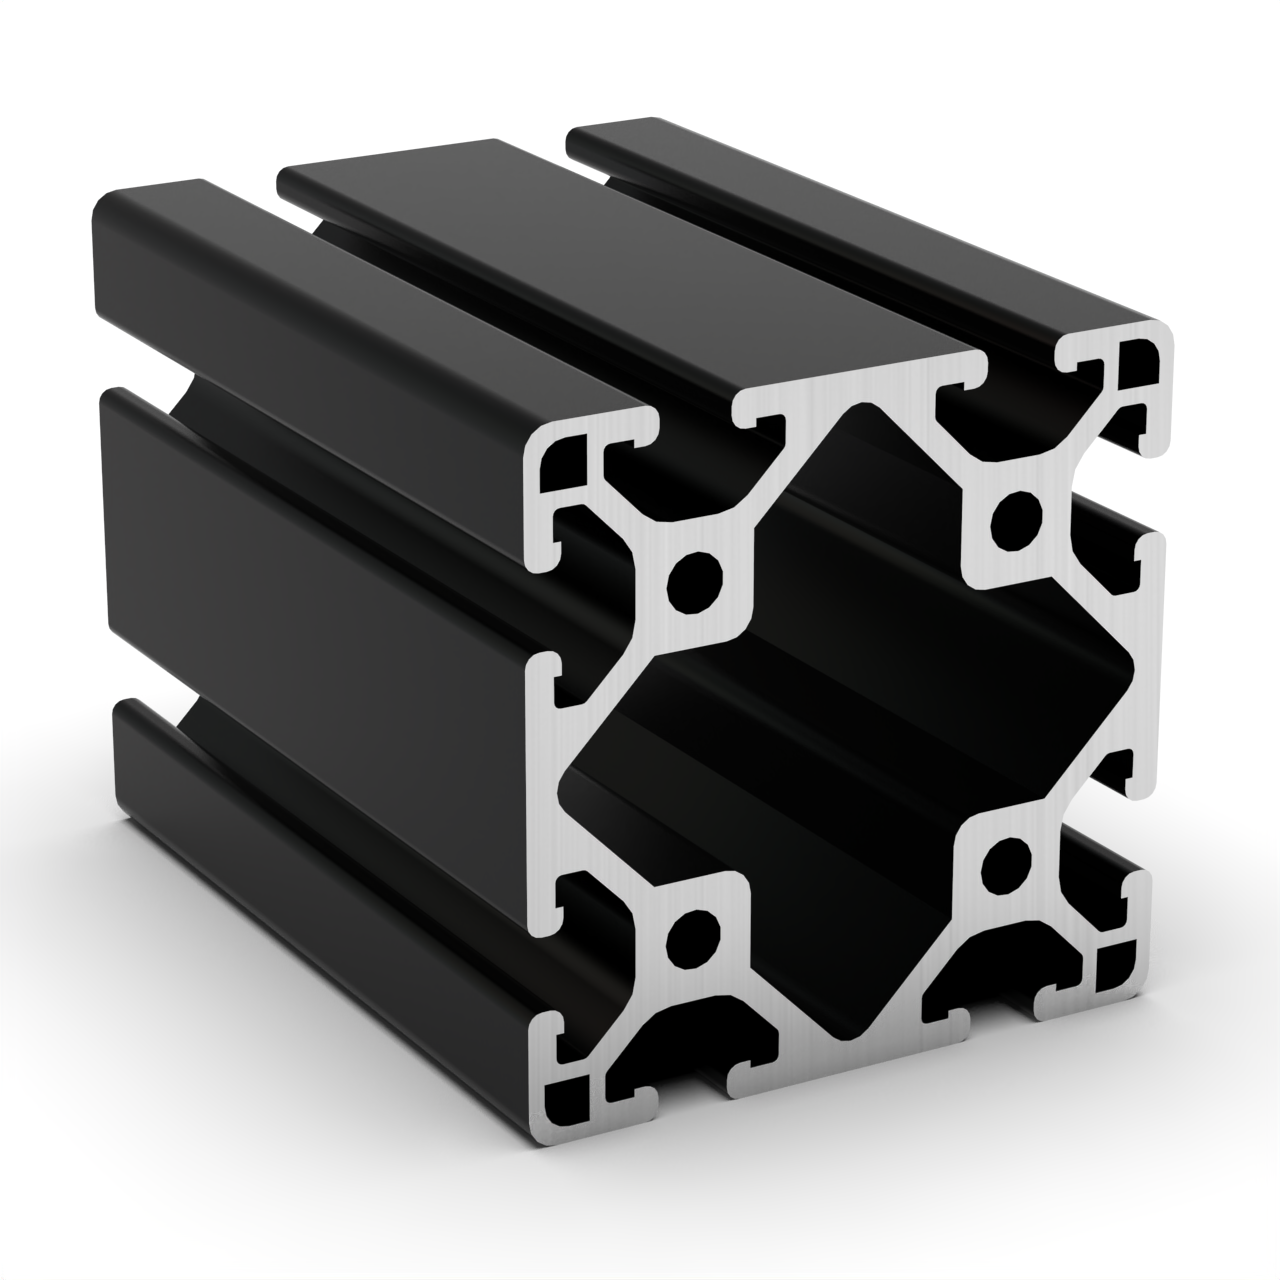 TSLOTS 3030-LS-Black 3" x 3" Light Black Anodize .32" tslot Aluminum Framing Profile